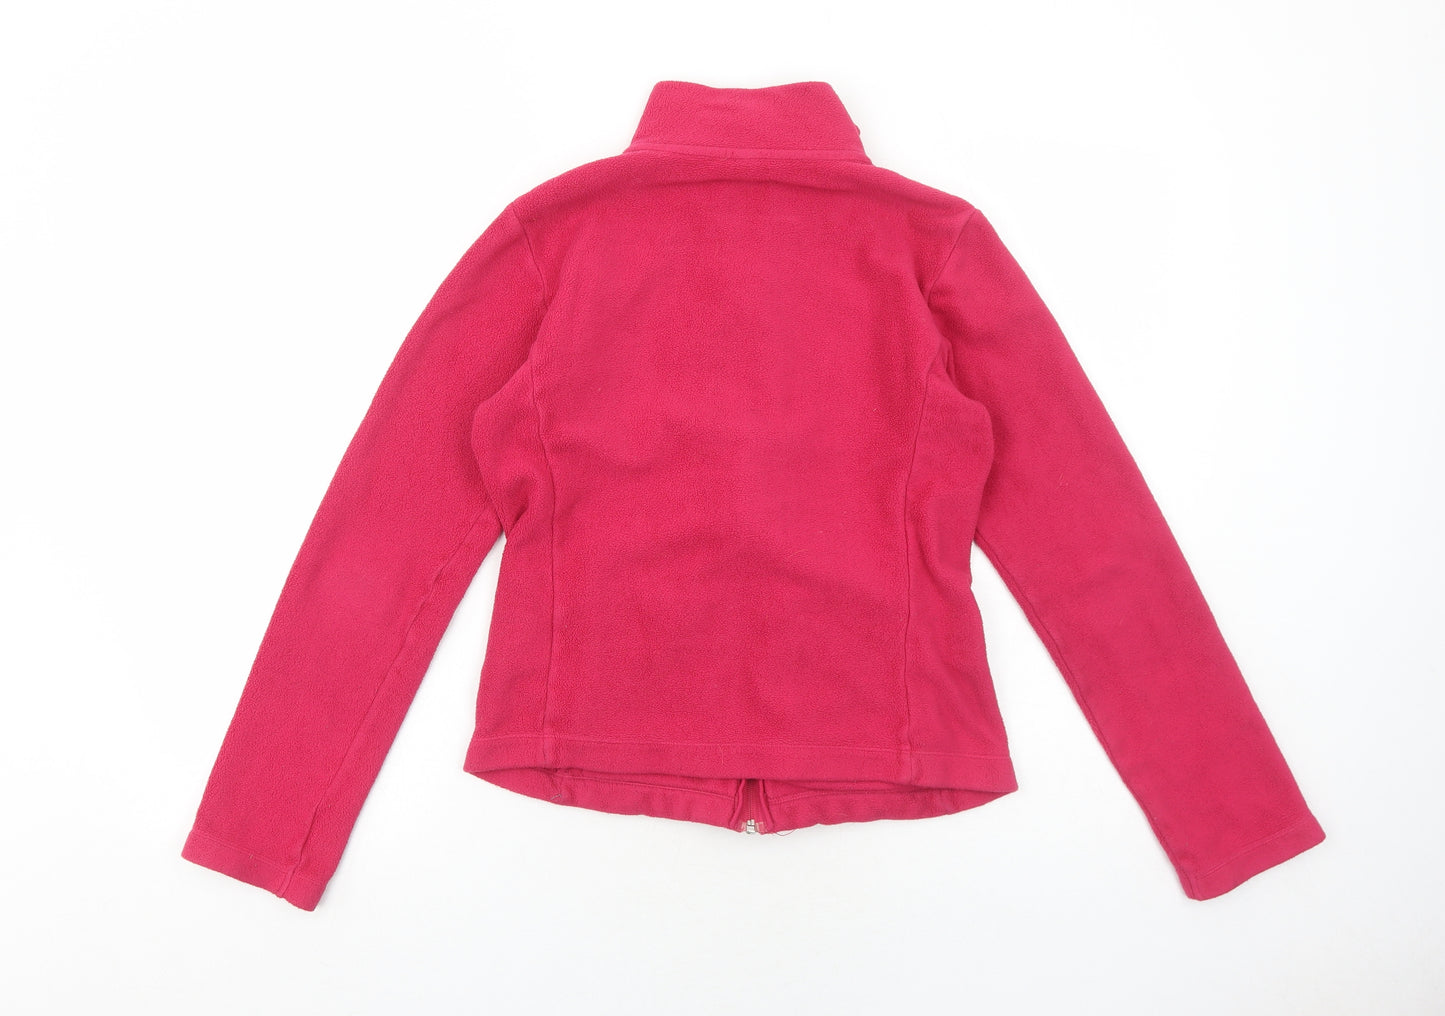 Uniqlo Womens Pink Jacket Size XS Zip